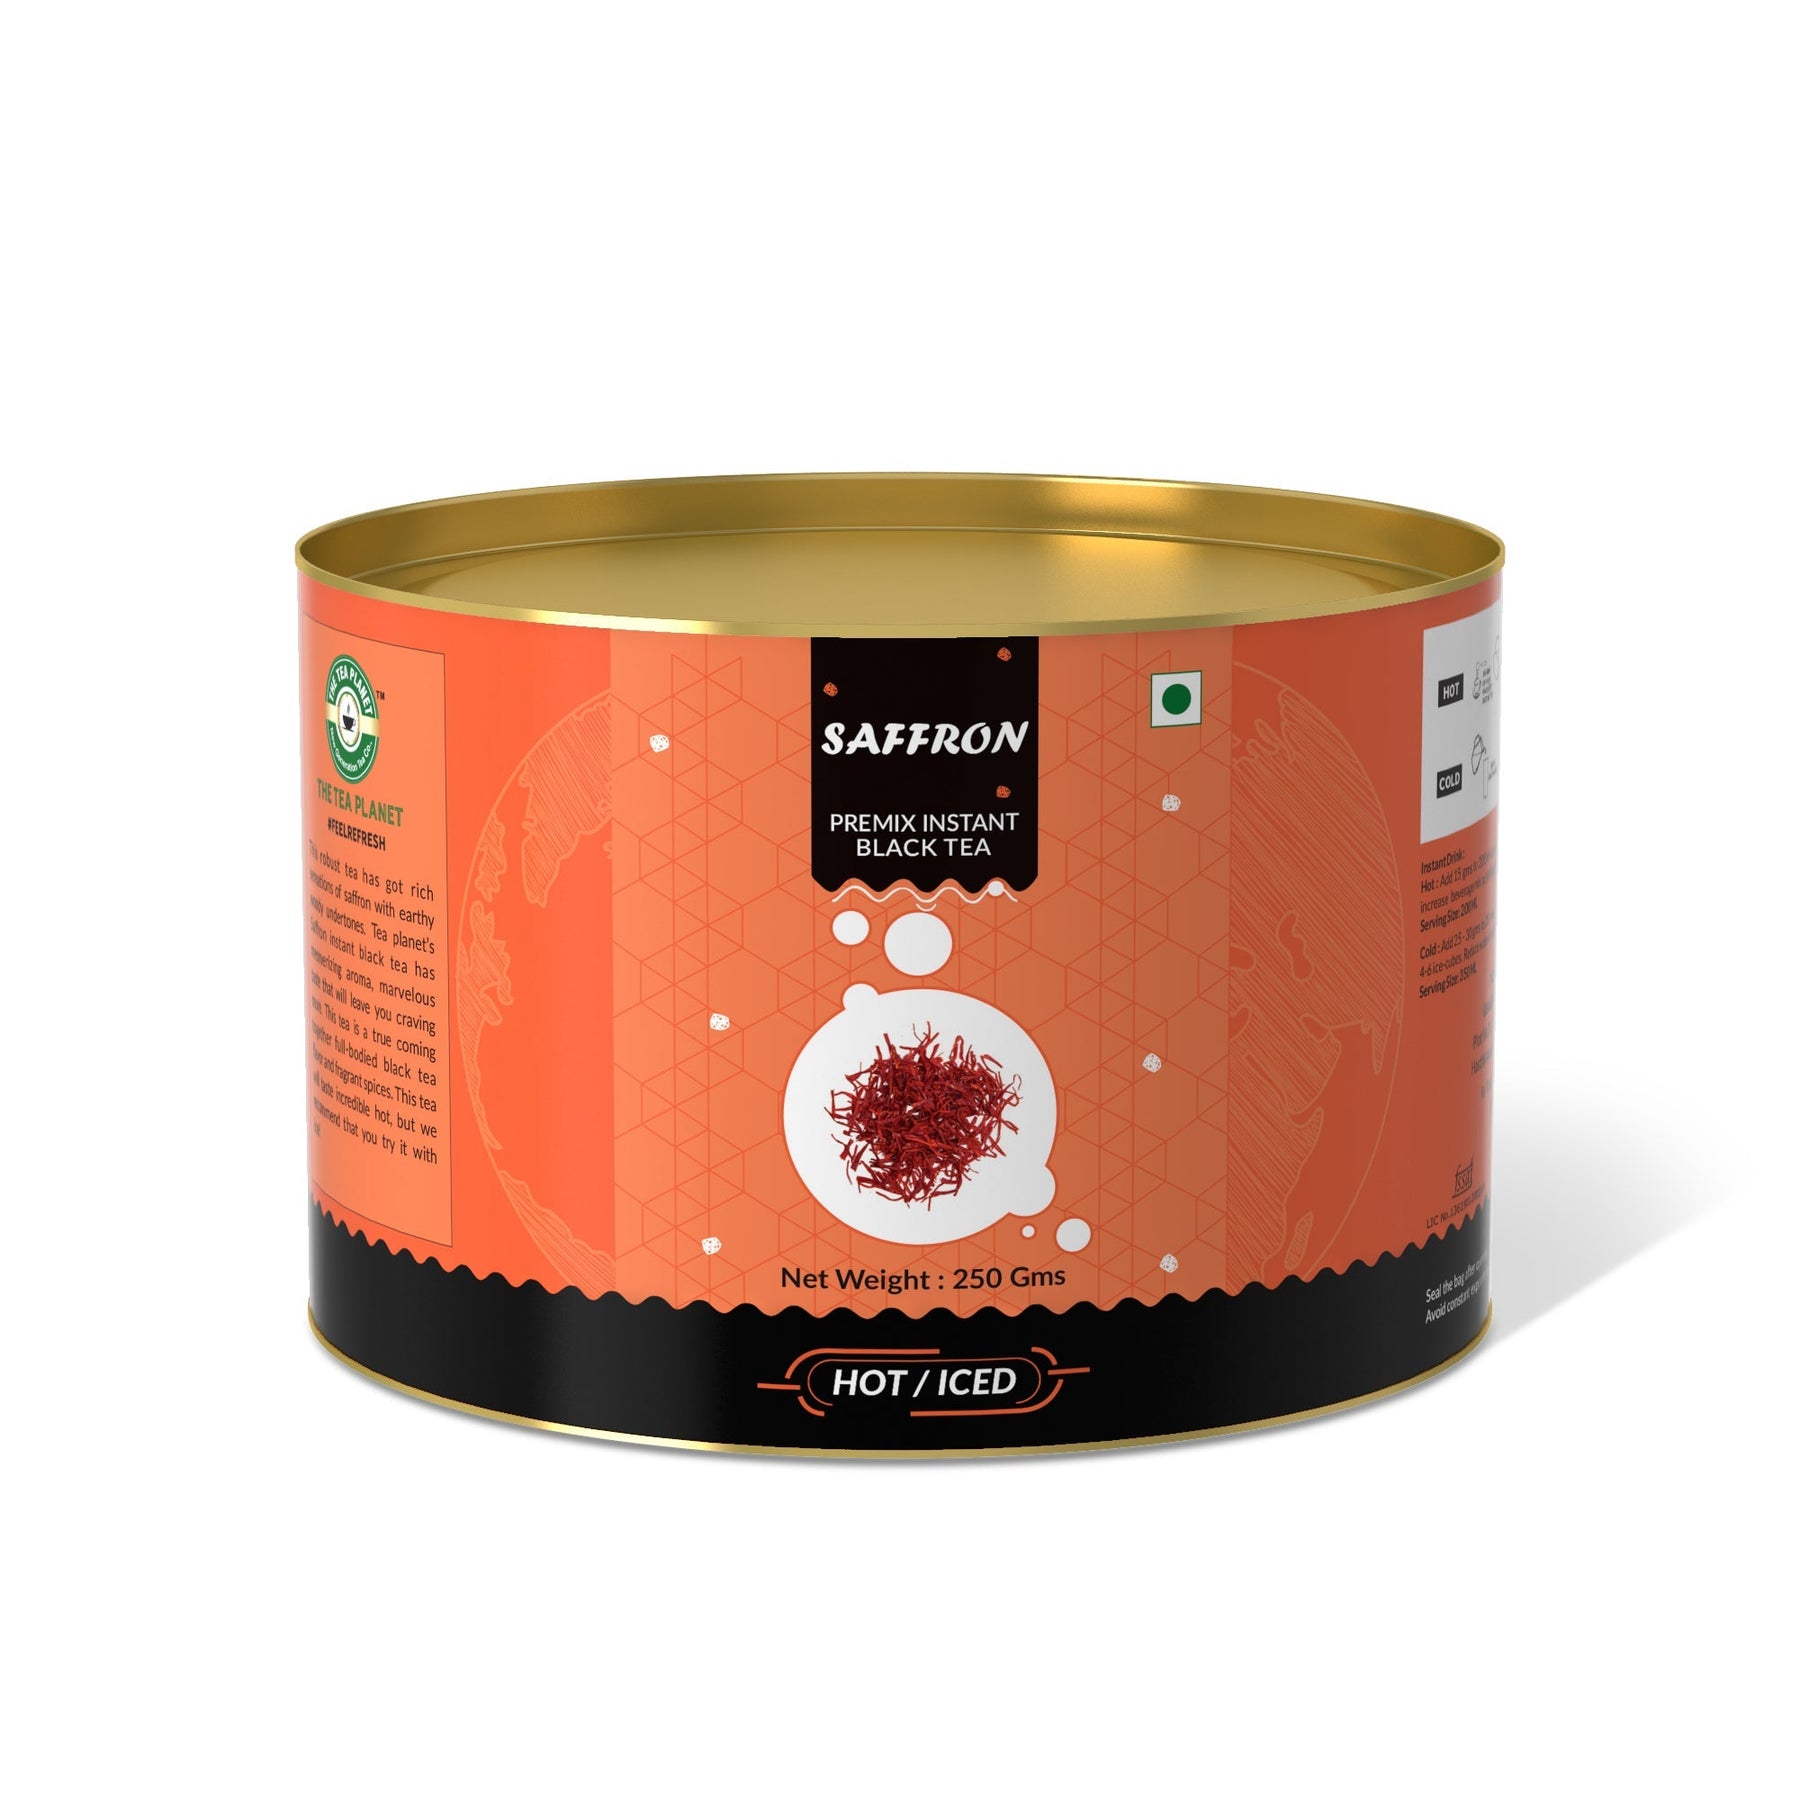 Saffron Flavored Instant Black Tea - 800 gms